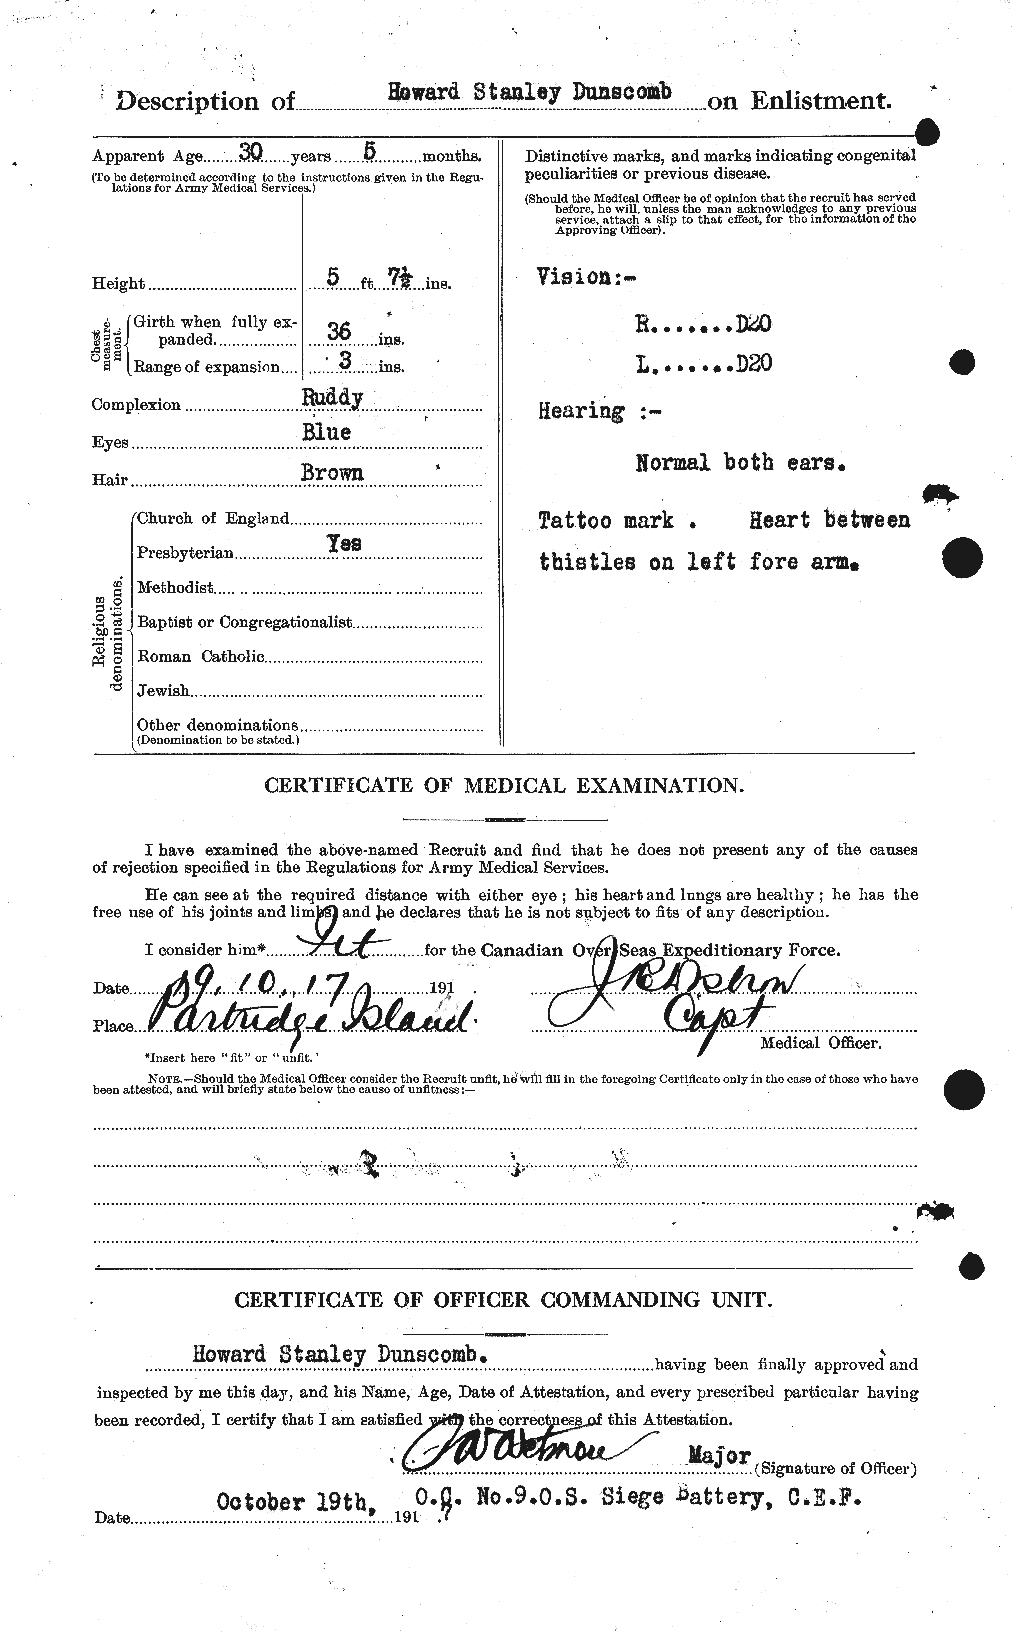 Dossiers du Personnel de la Première Guerre mondiale - CEC 304668b